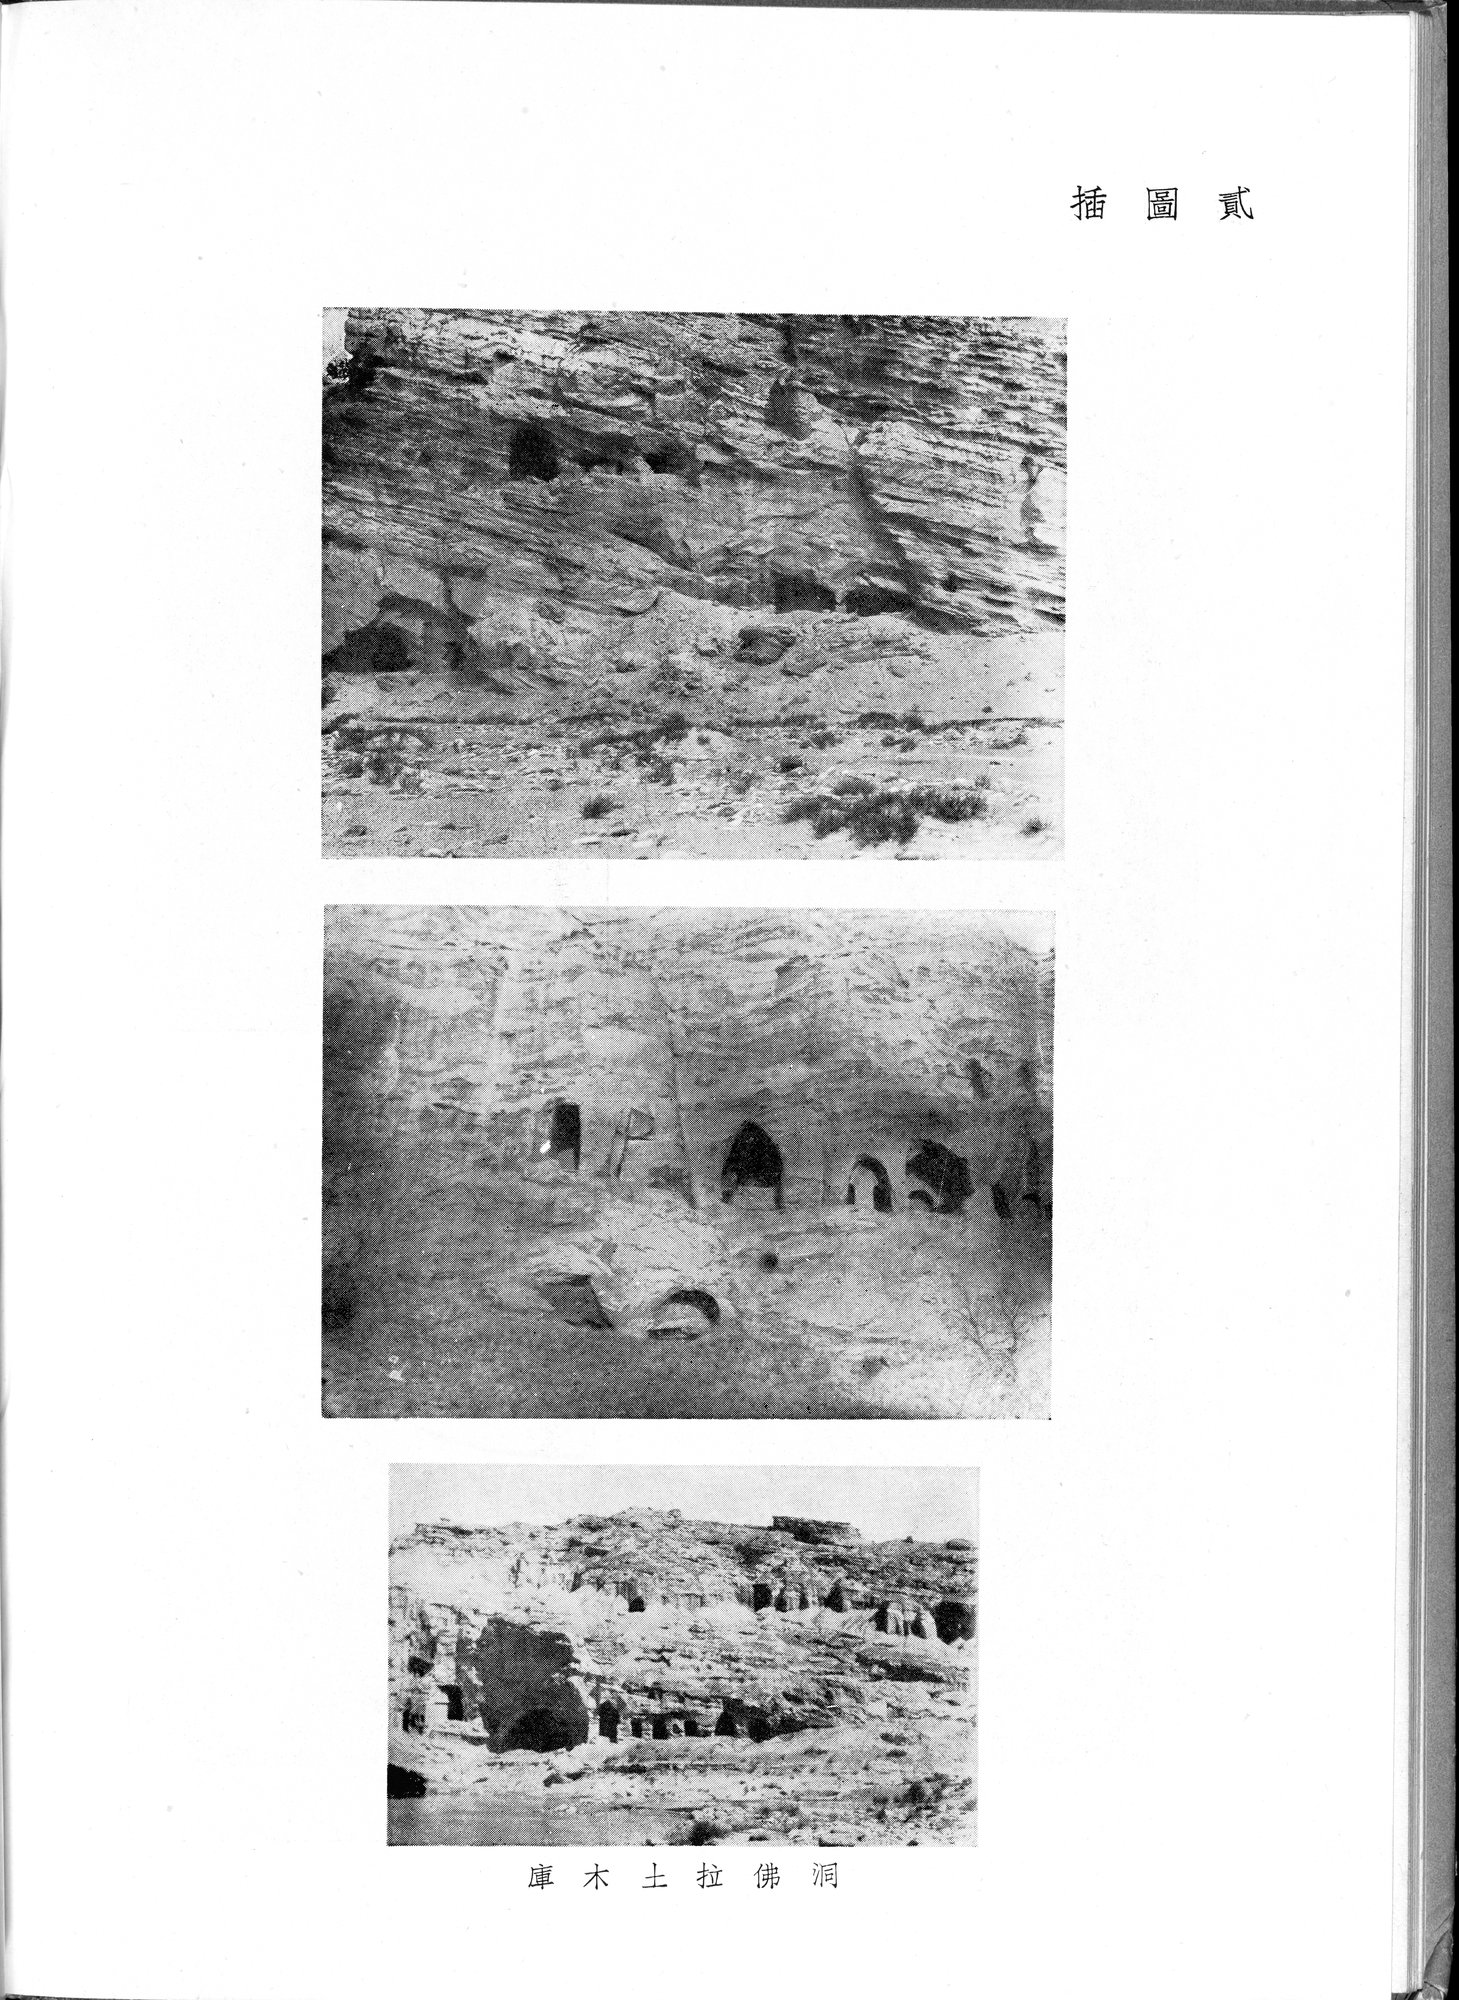 塔里木盆地考古記 : vol.1 / Page 98 (Grayscale High Resolution Image)